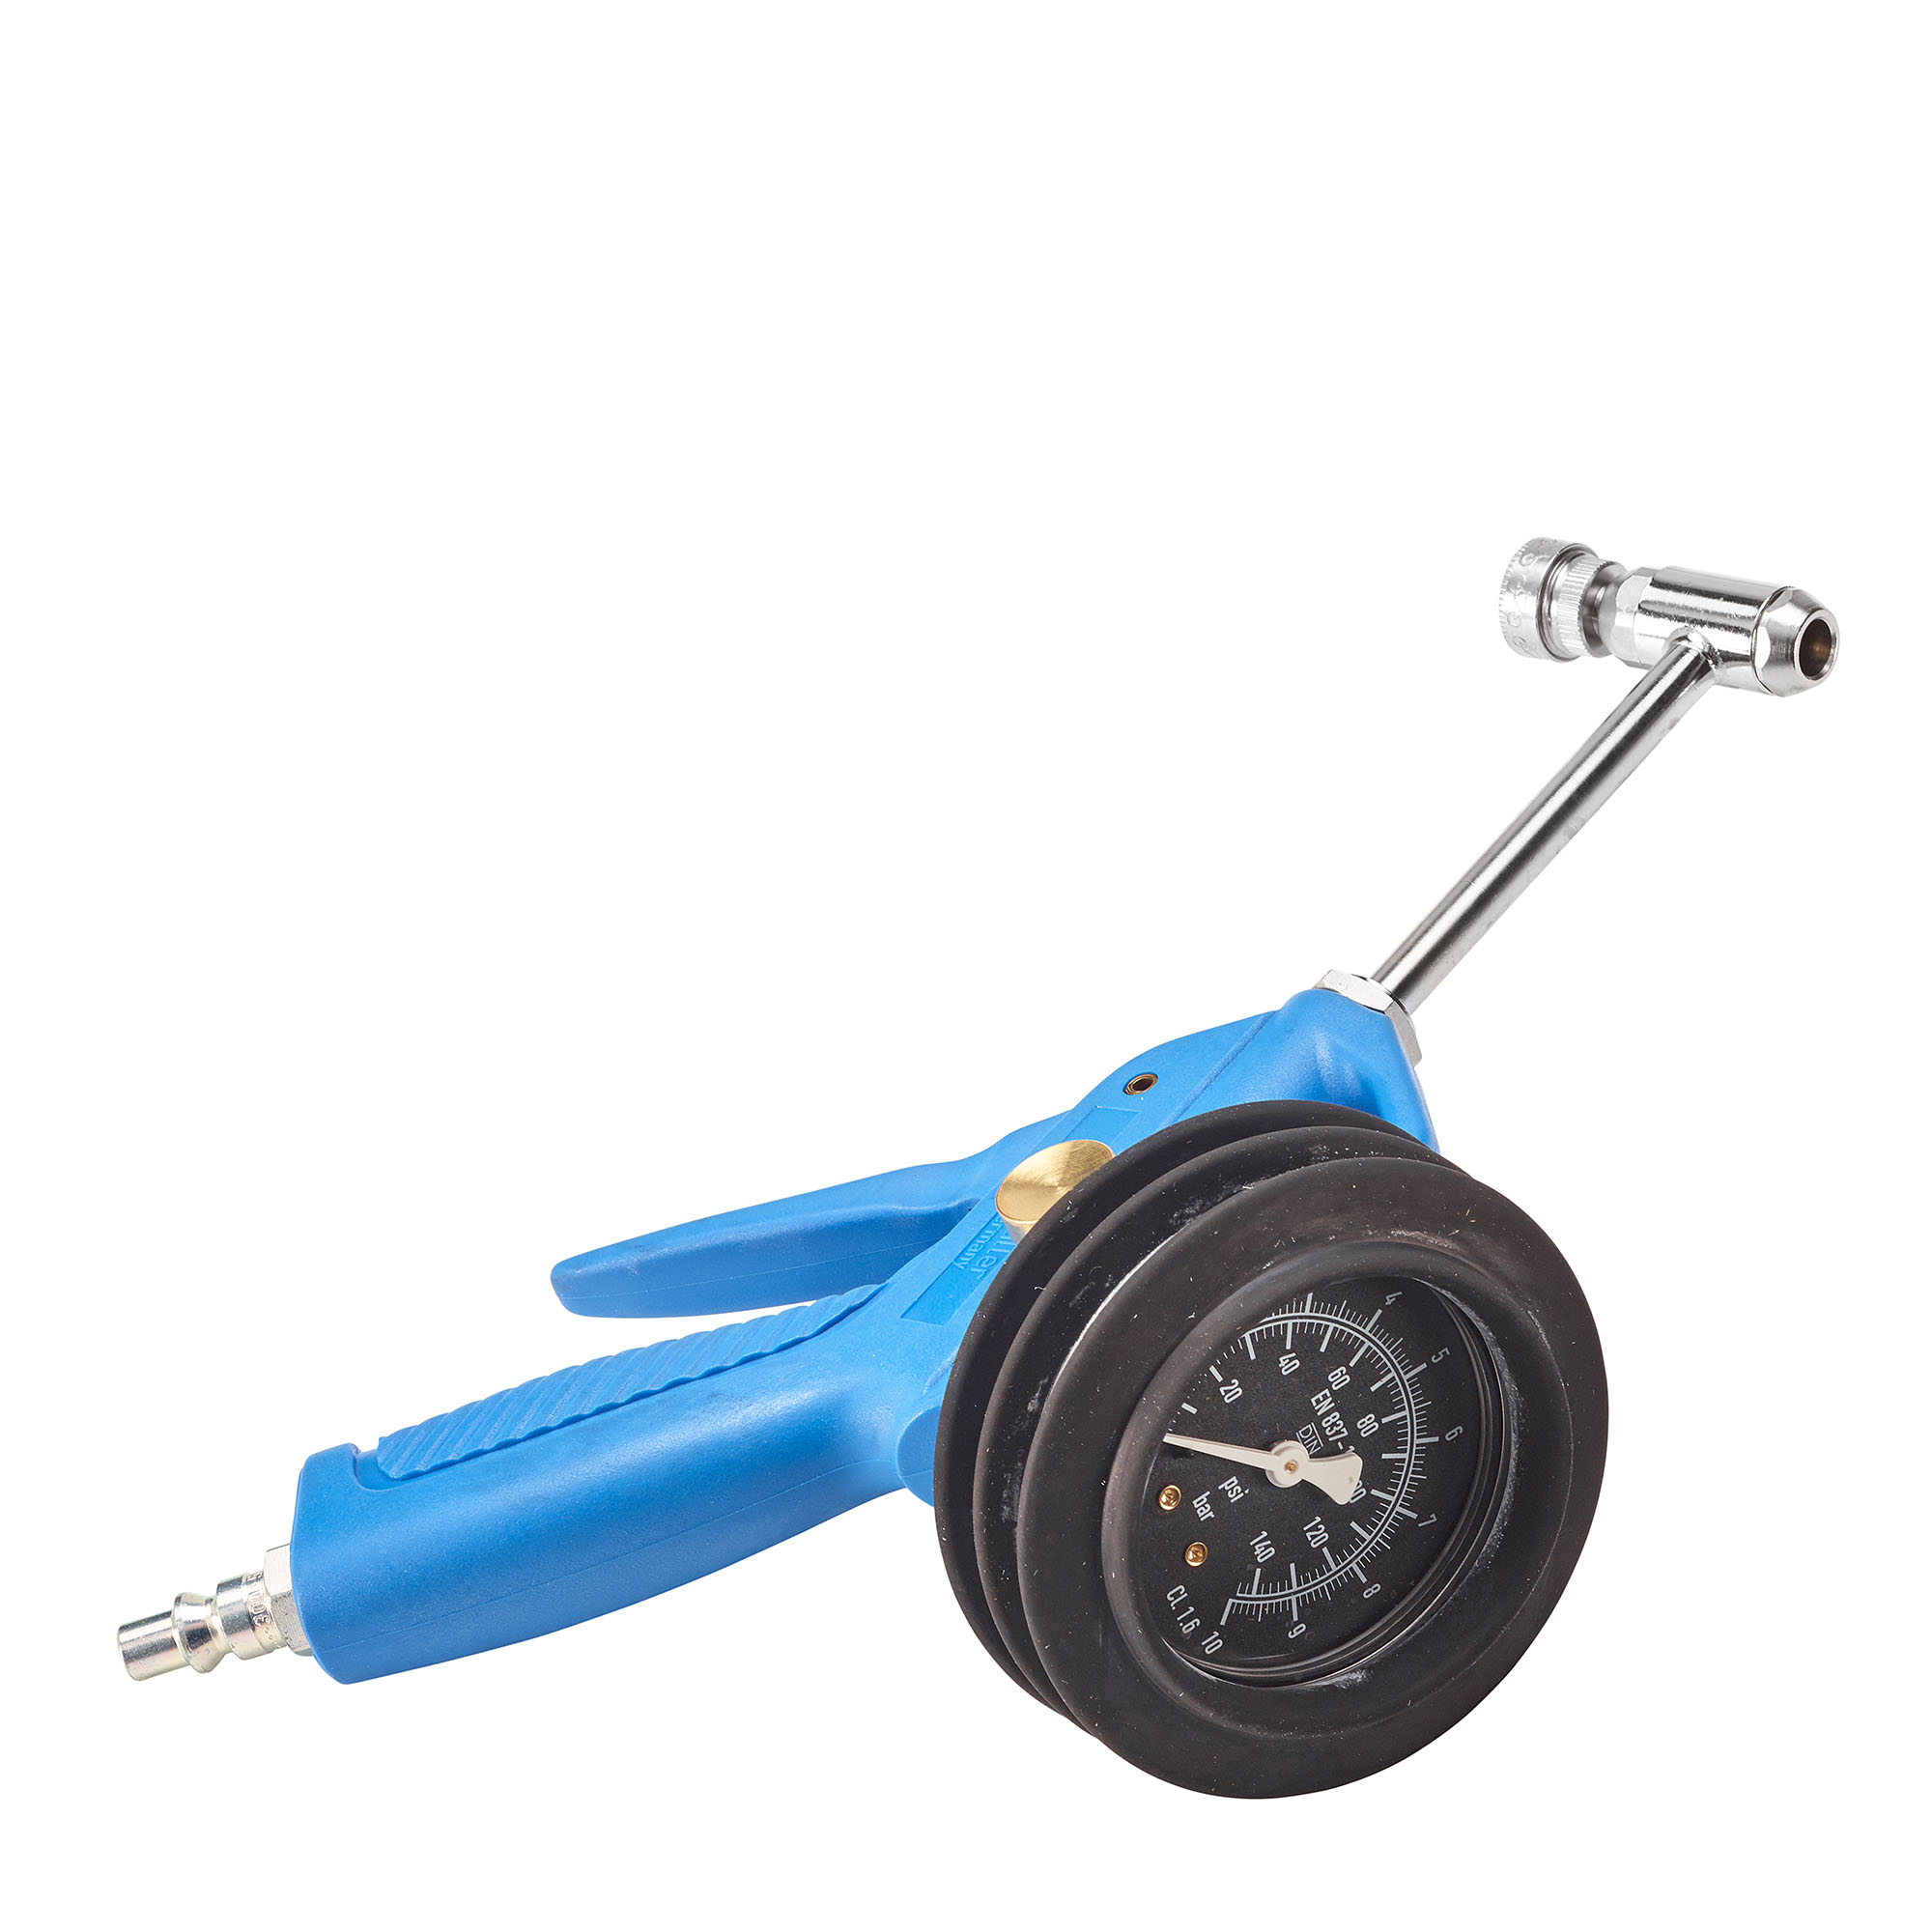 Tyre gauge - Swiss quick coupling